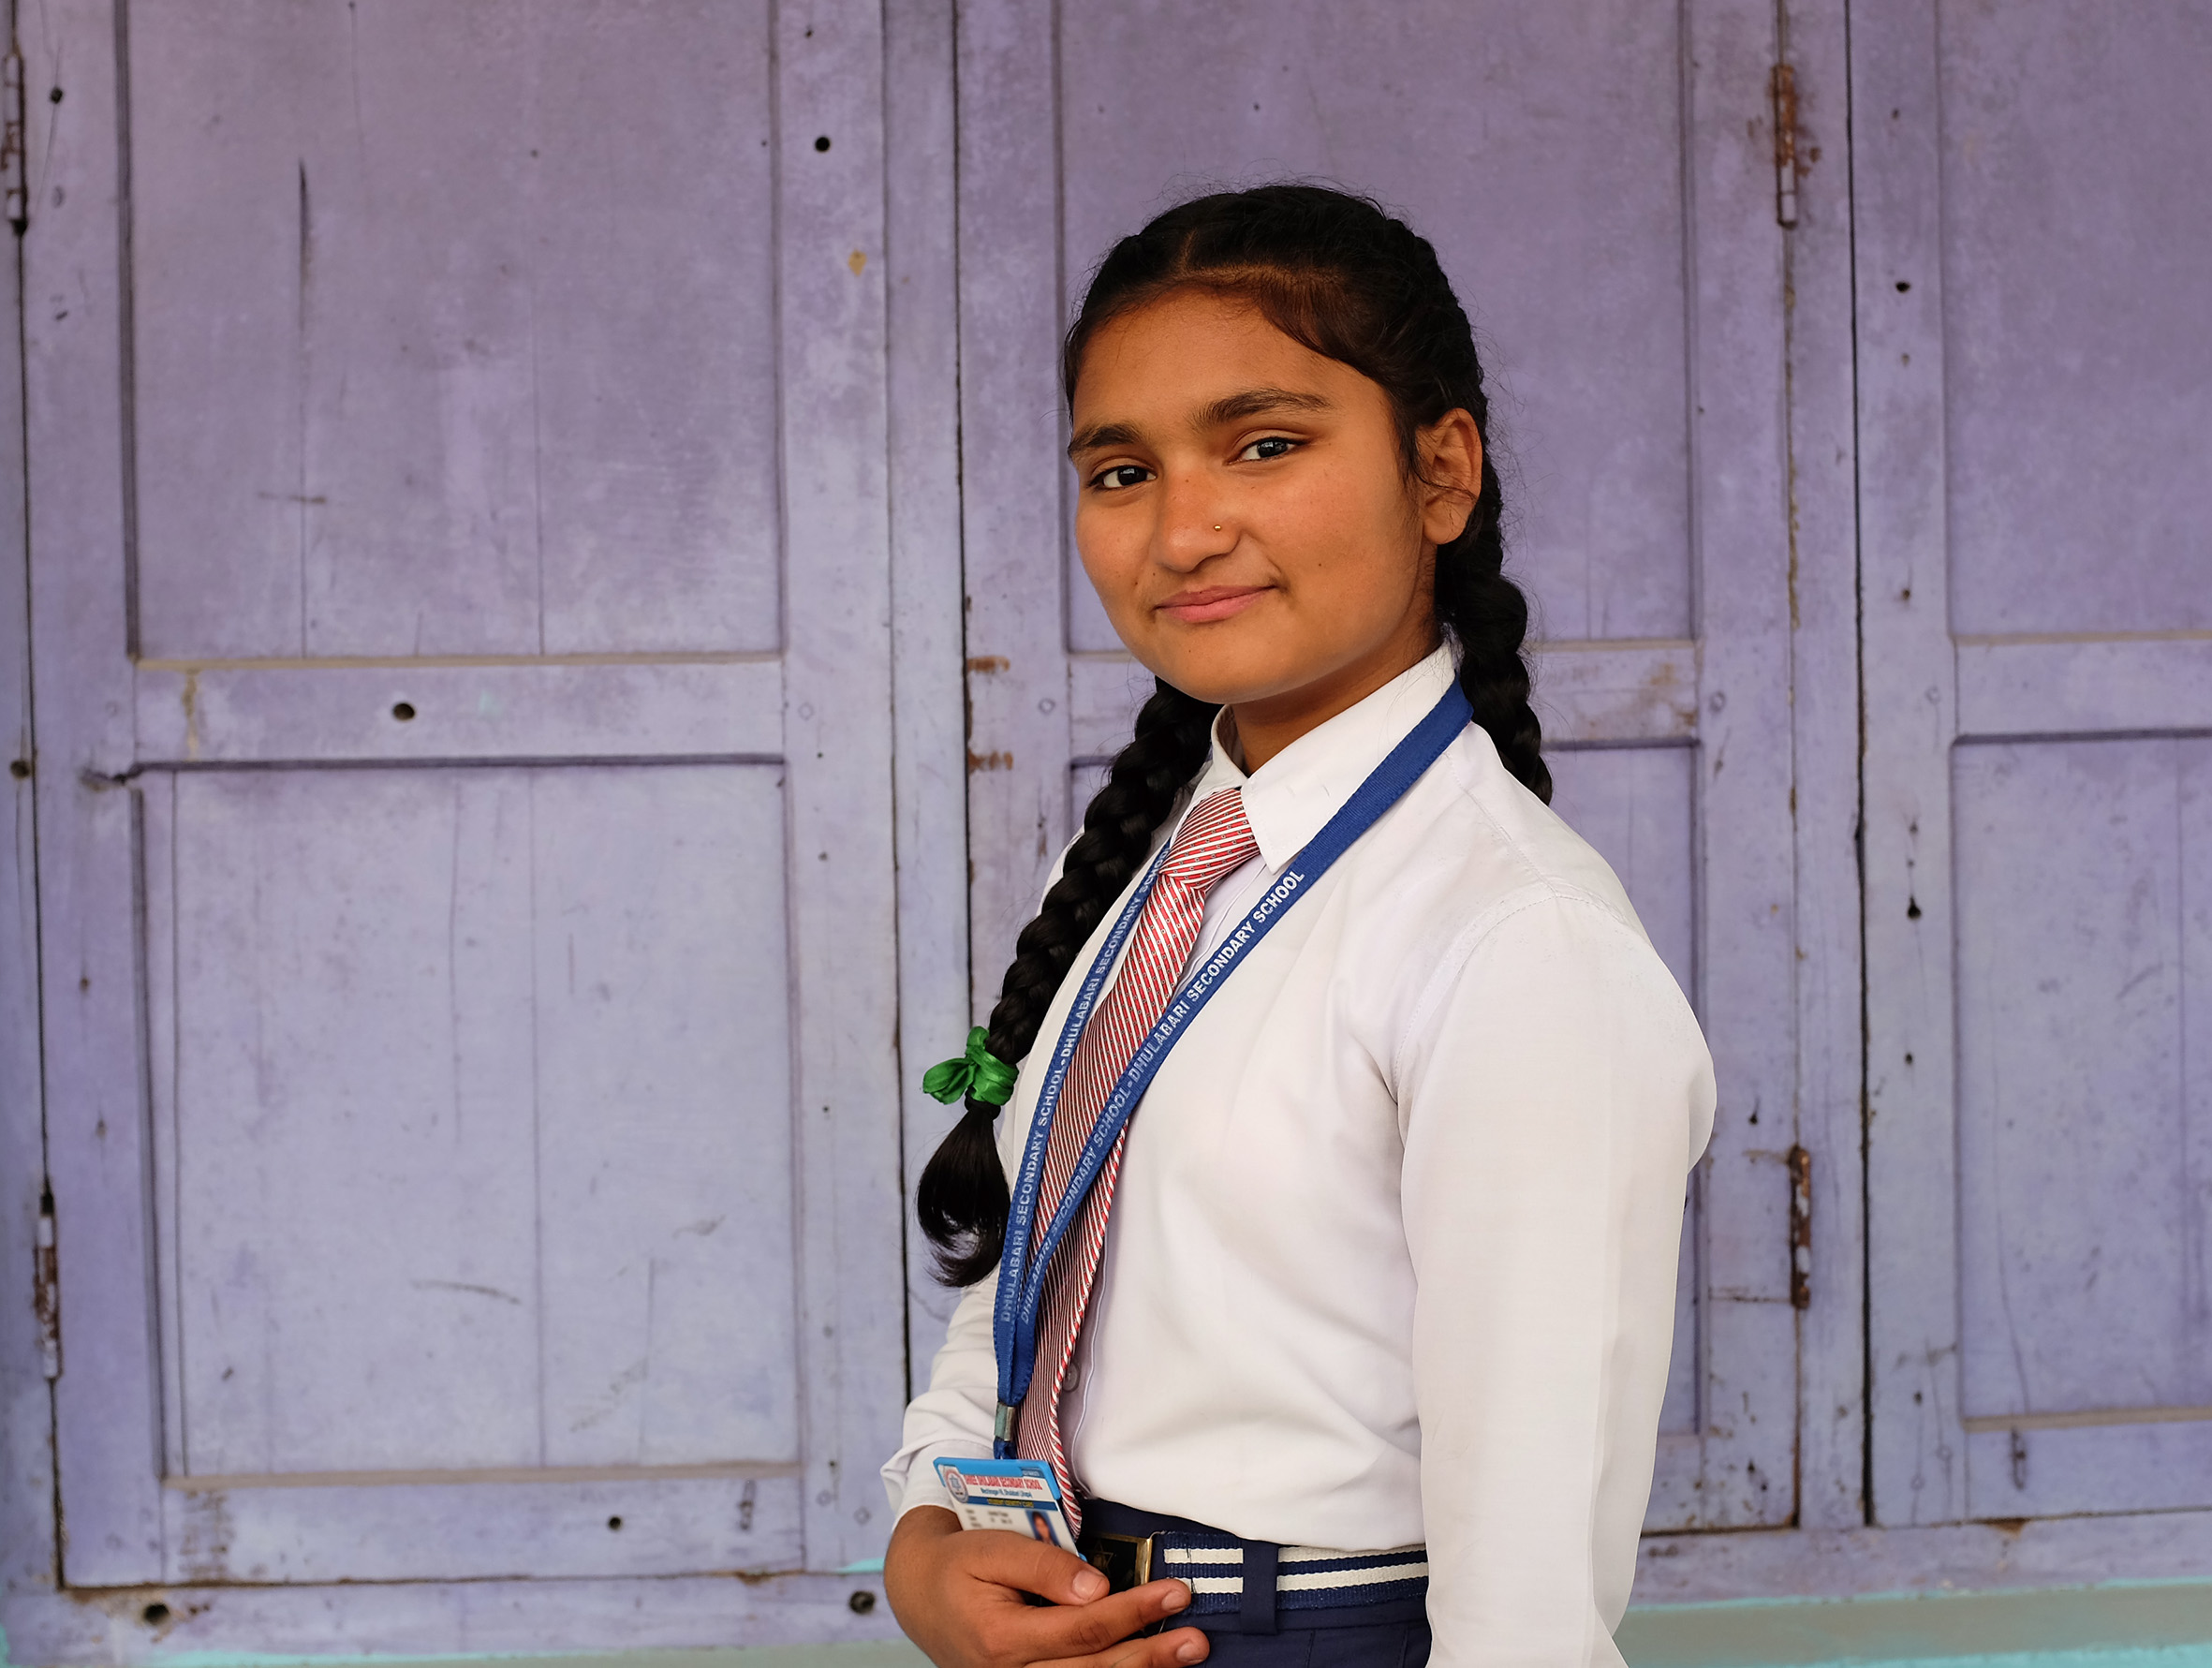 Nepalilainen tyttö koulupuvussa.